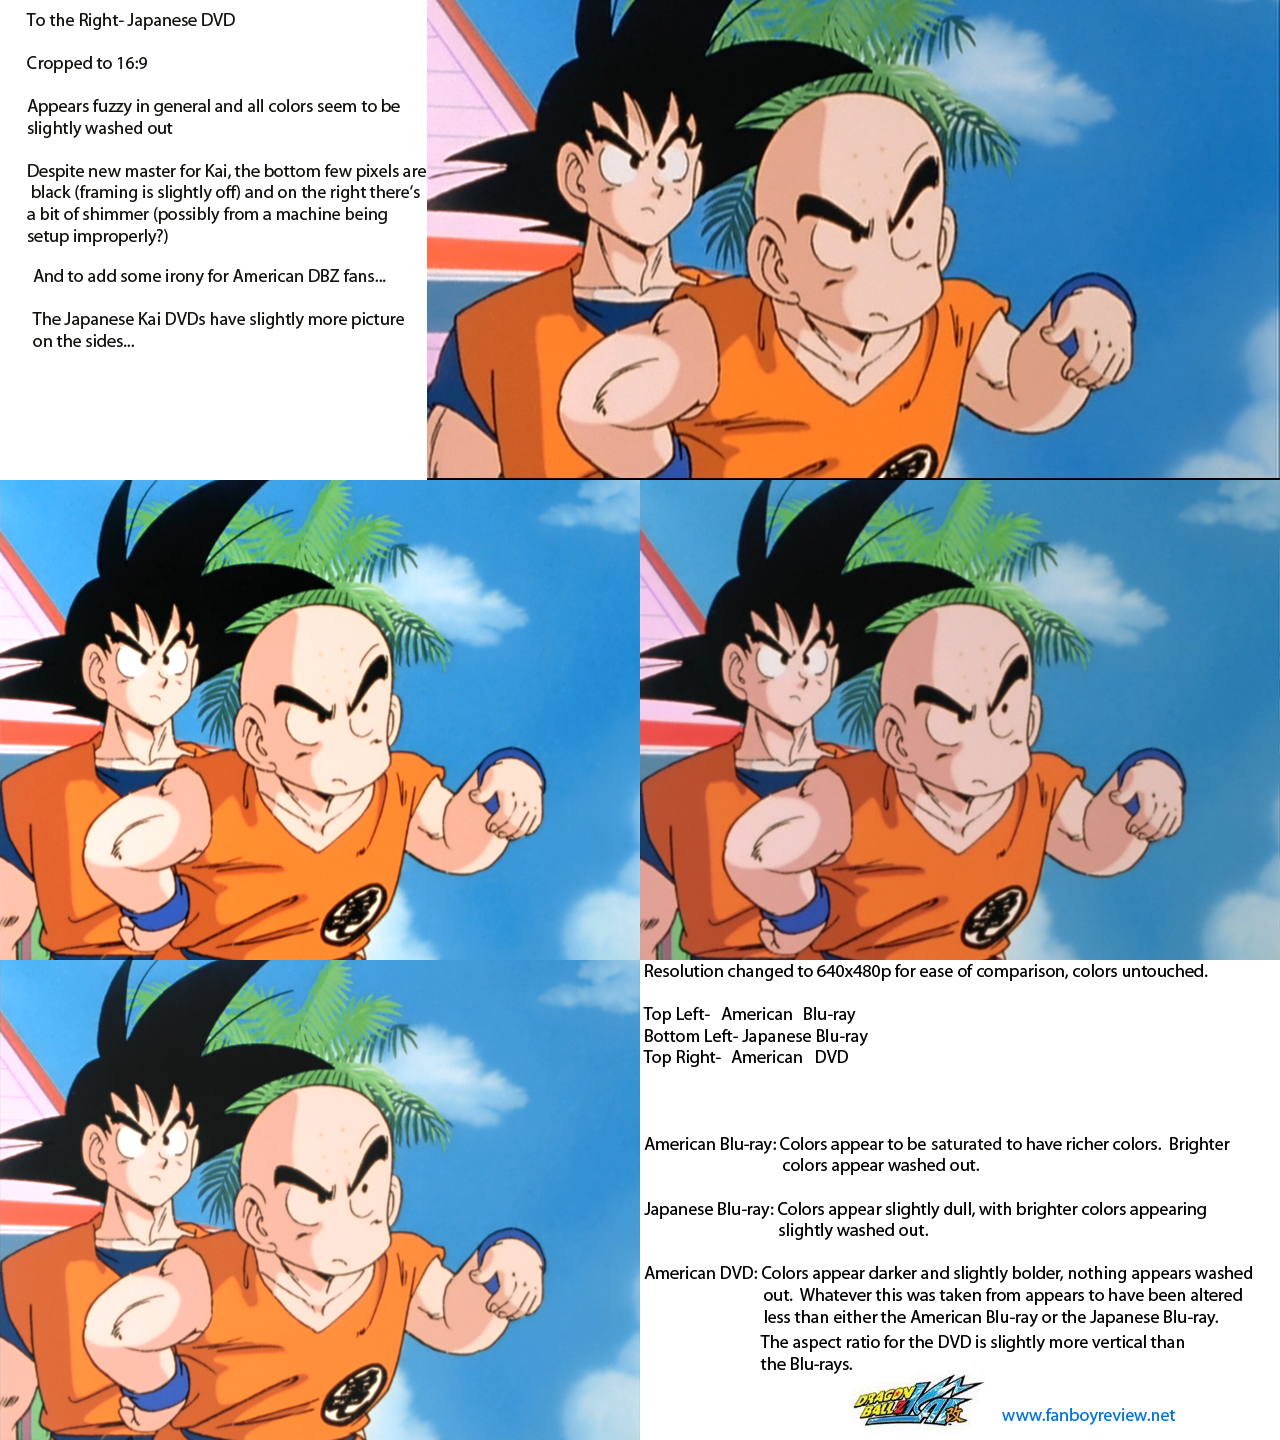 Dragon Ball Z Kai Episode 1  Comparison To Dragon Ball Z 